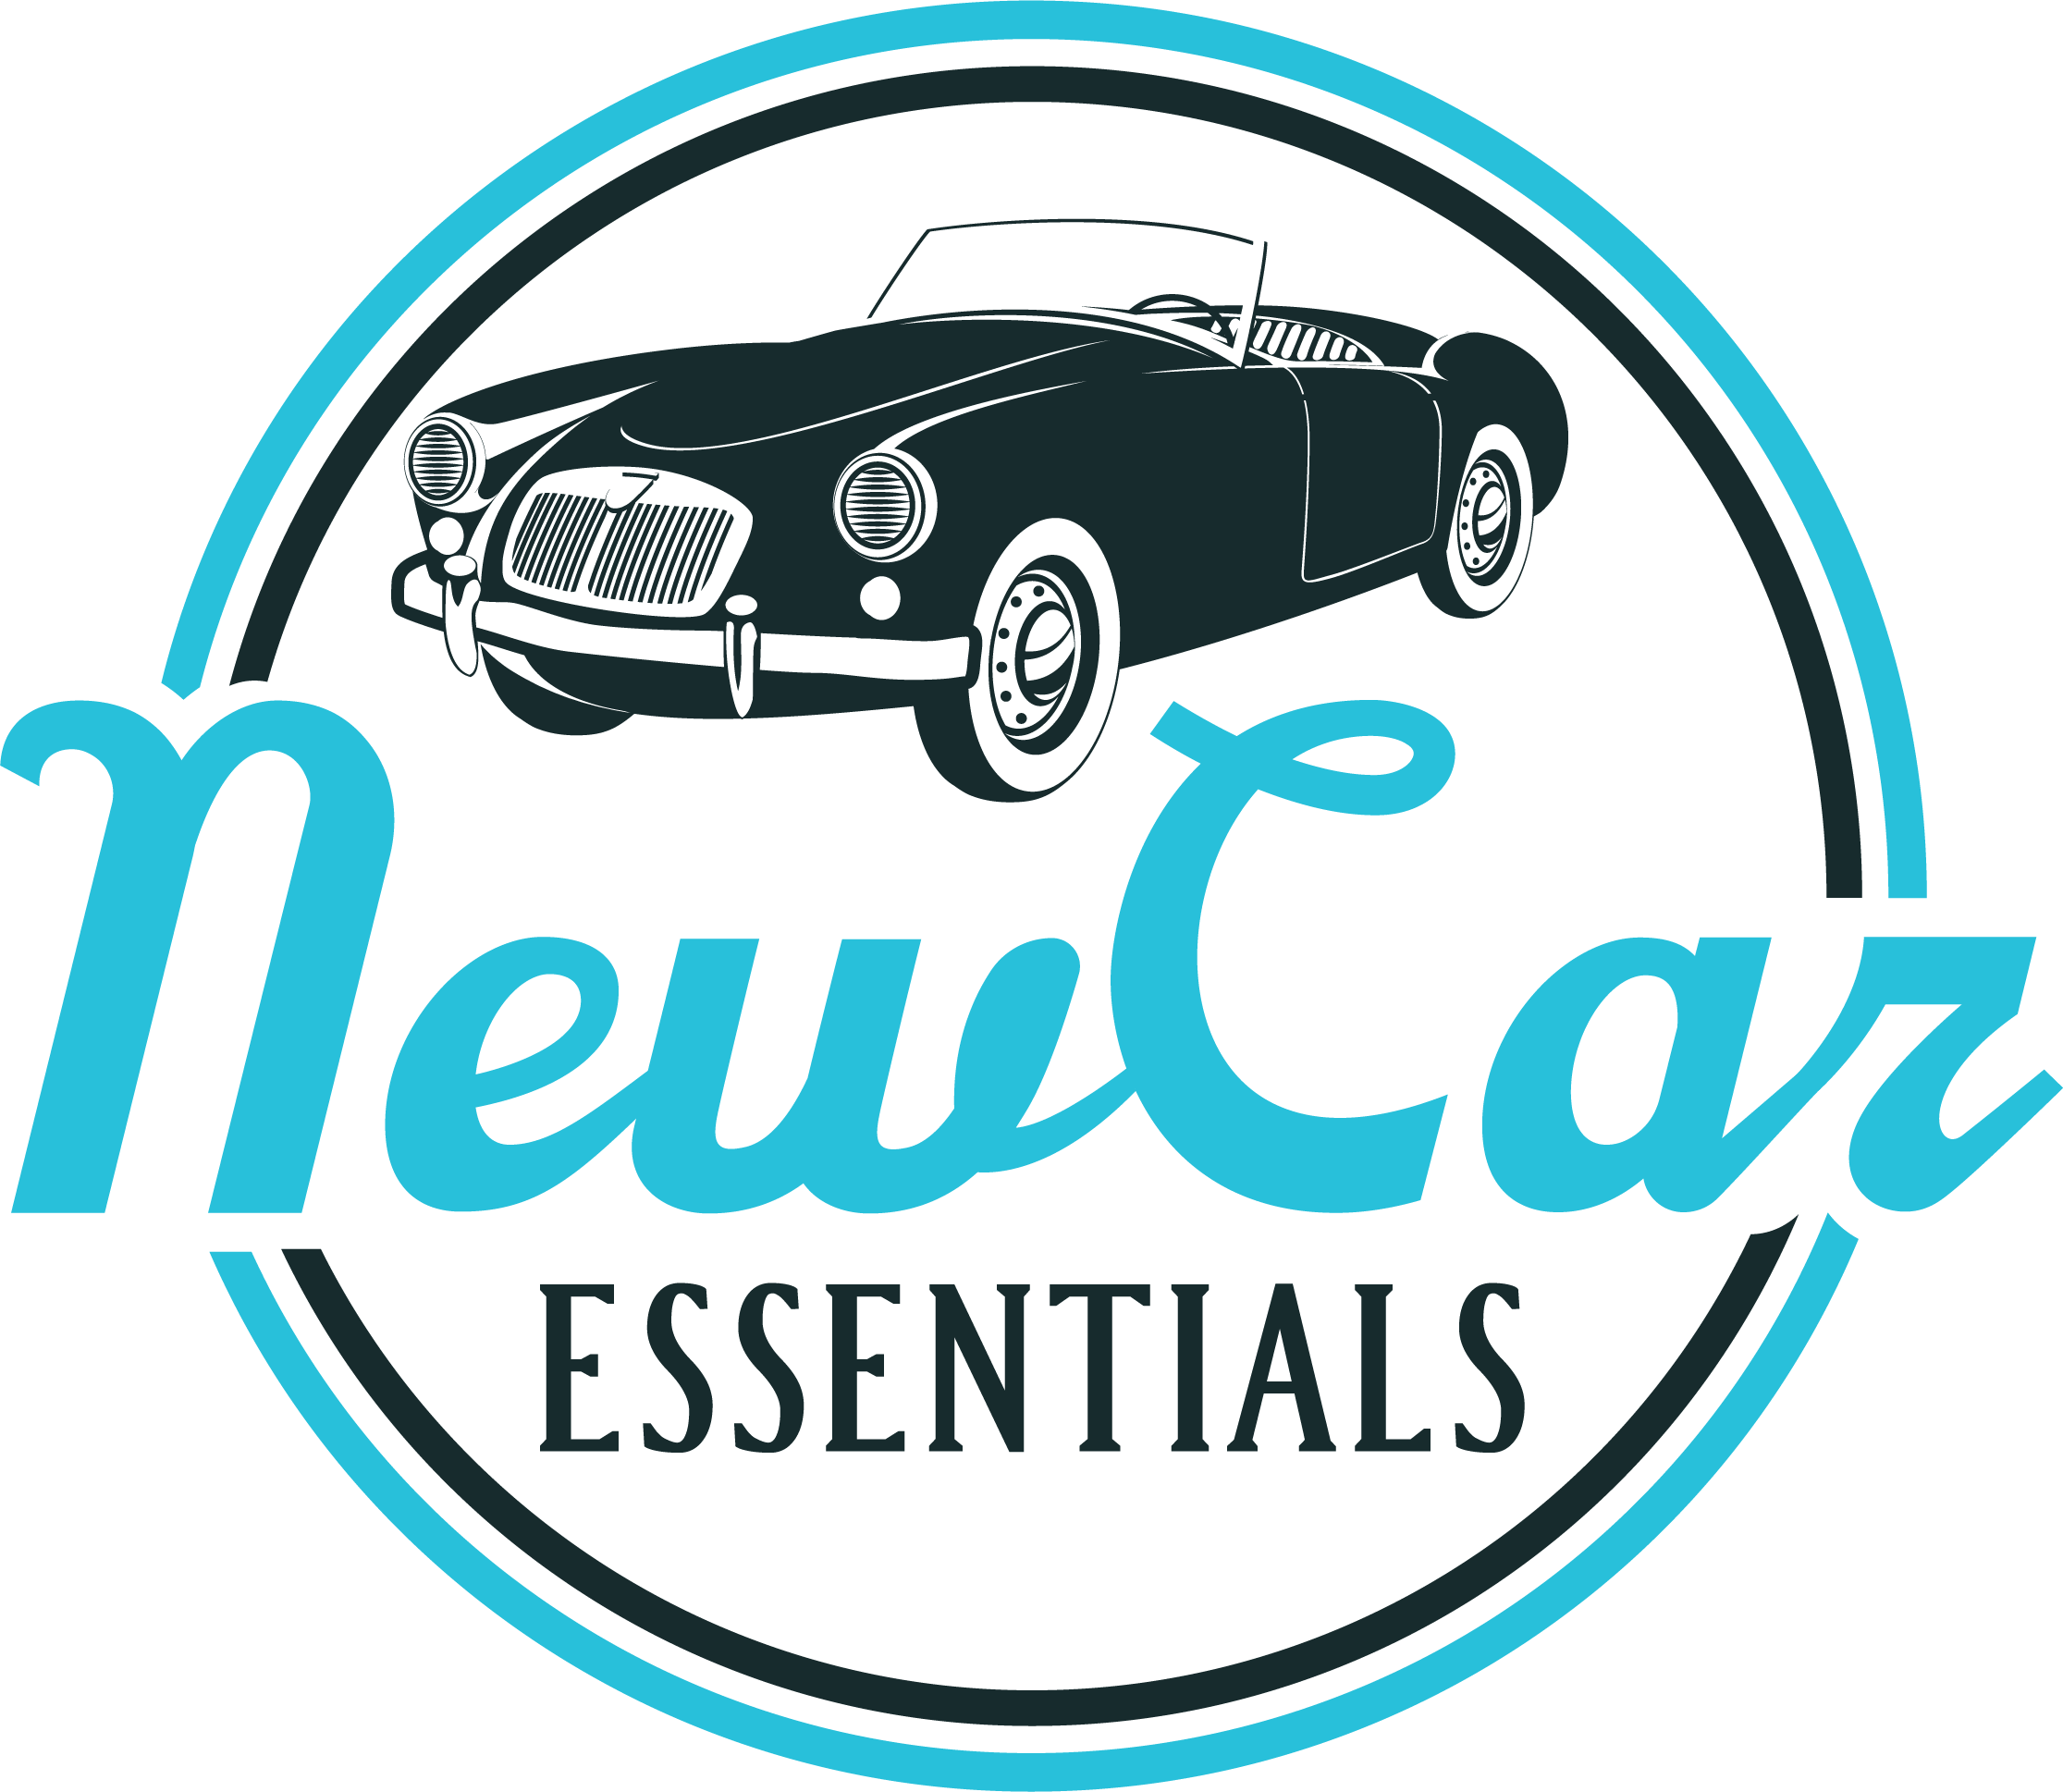 Car Essentials